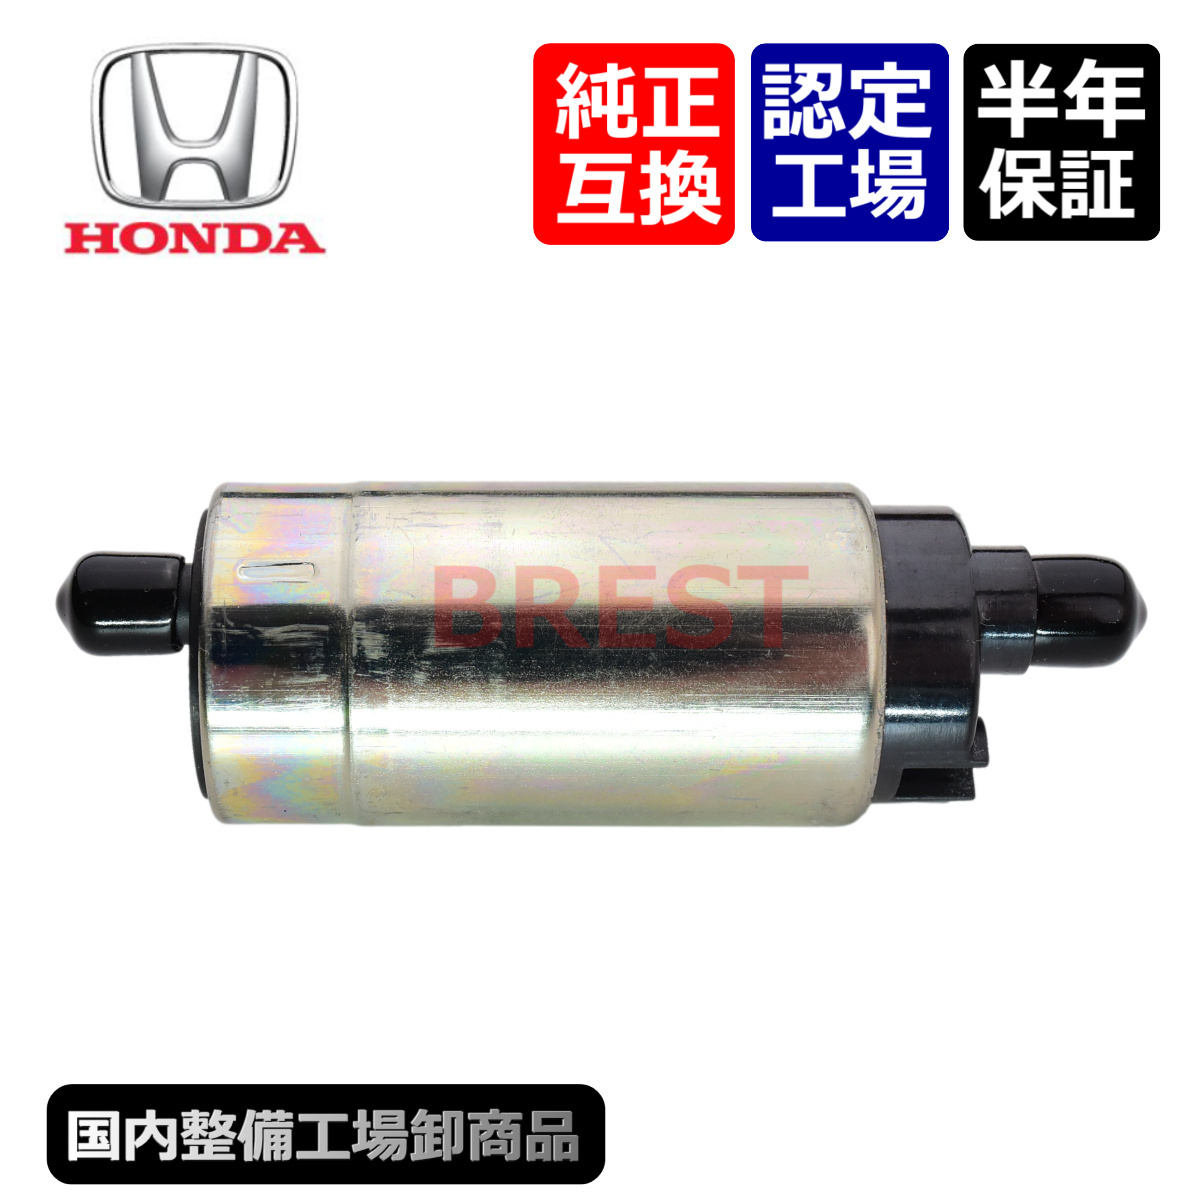  Honda Super Cub 50 AA01 AA02 AA04 injection fuel pump fuel pump gasoline original interchangeable li pair set 